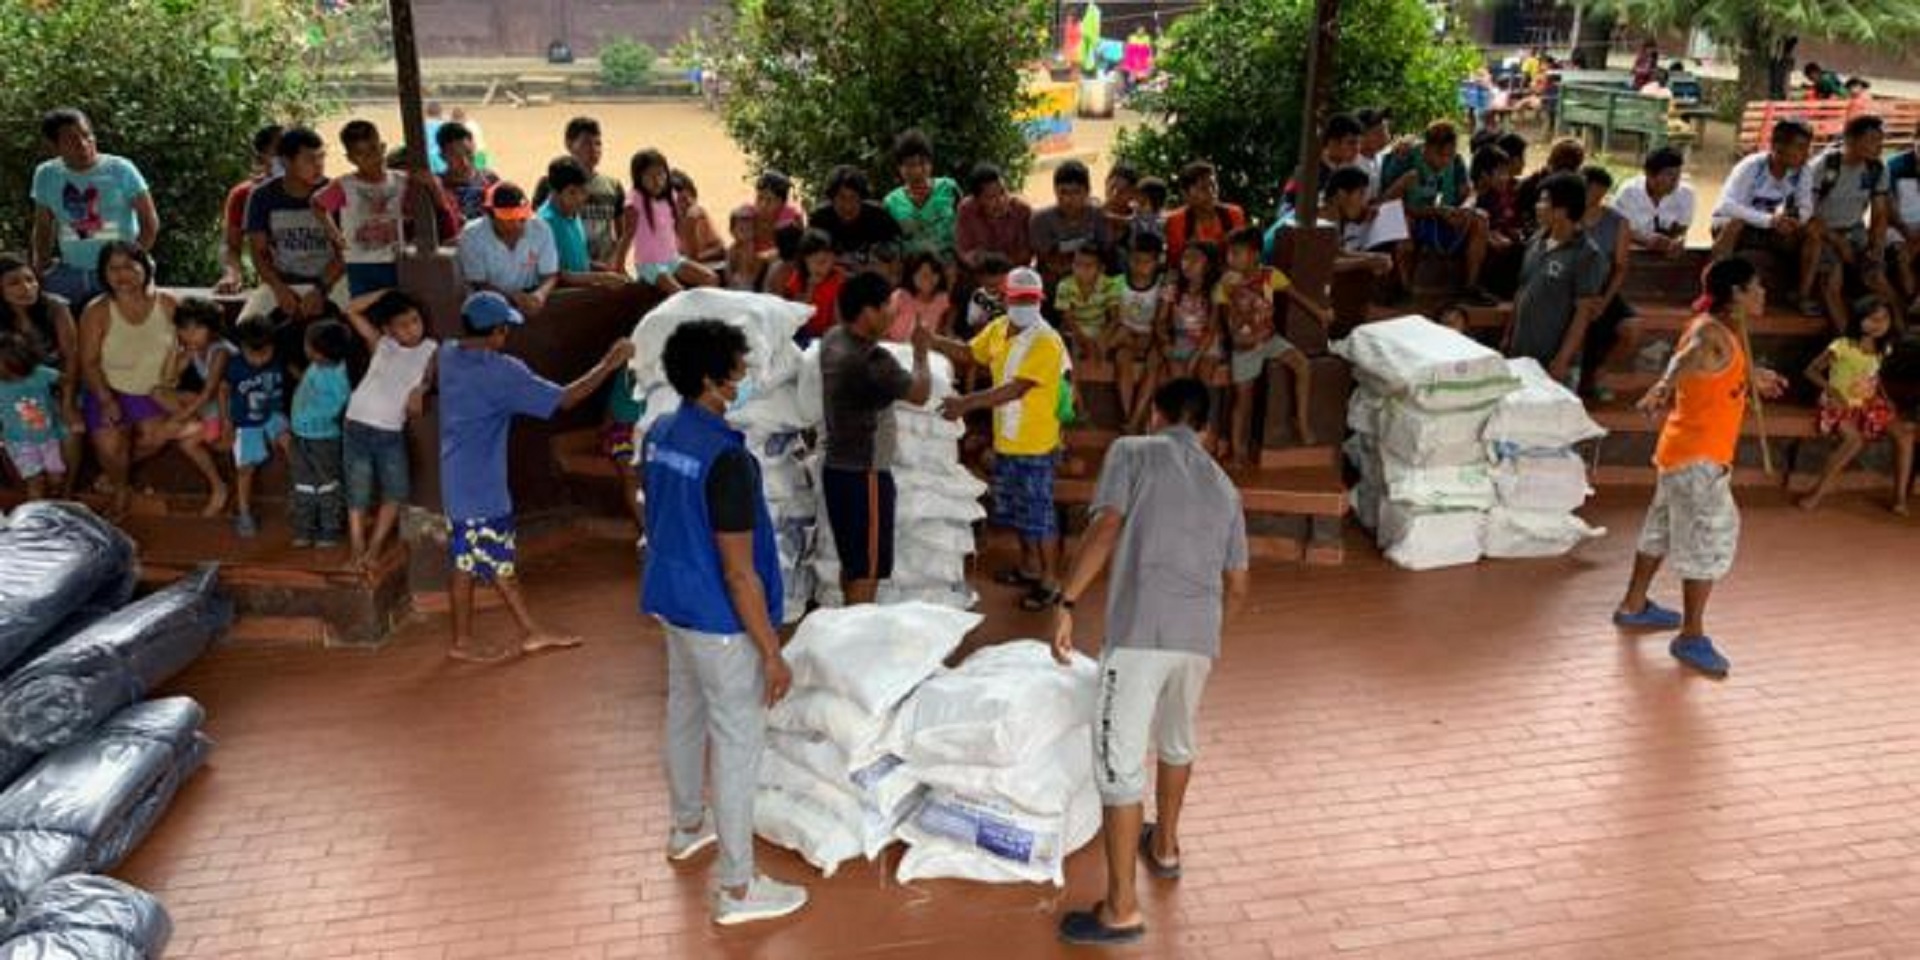 Este miércoles podrían retornar a su territorio 203 familias embera desplazadas el pasado 3 de enero en Bahía Solano. Foto: Cortesía Unidad de Víctimas.